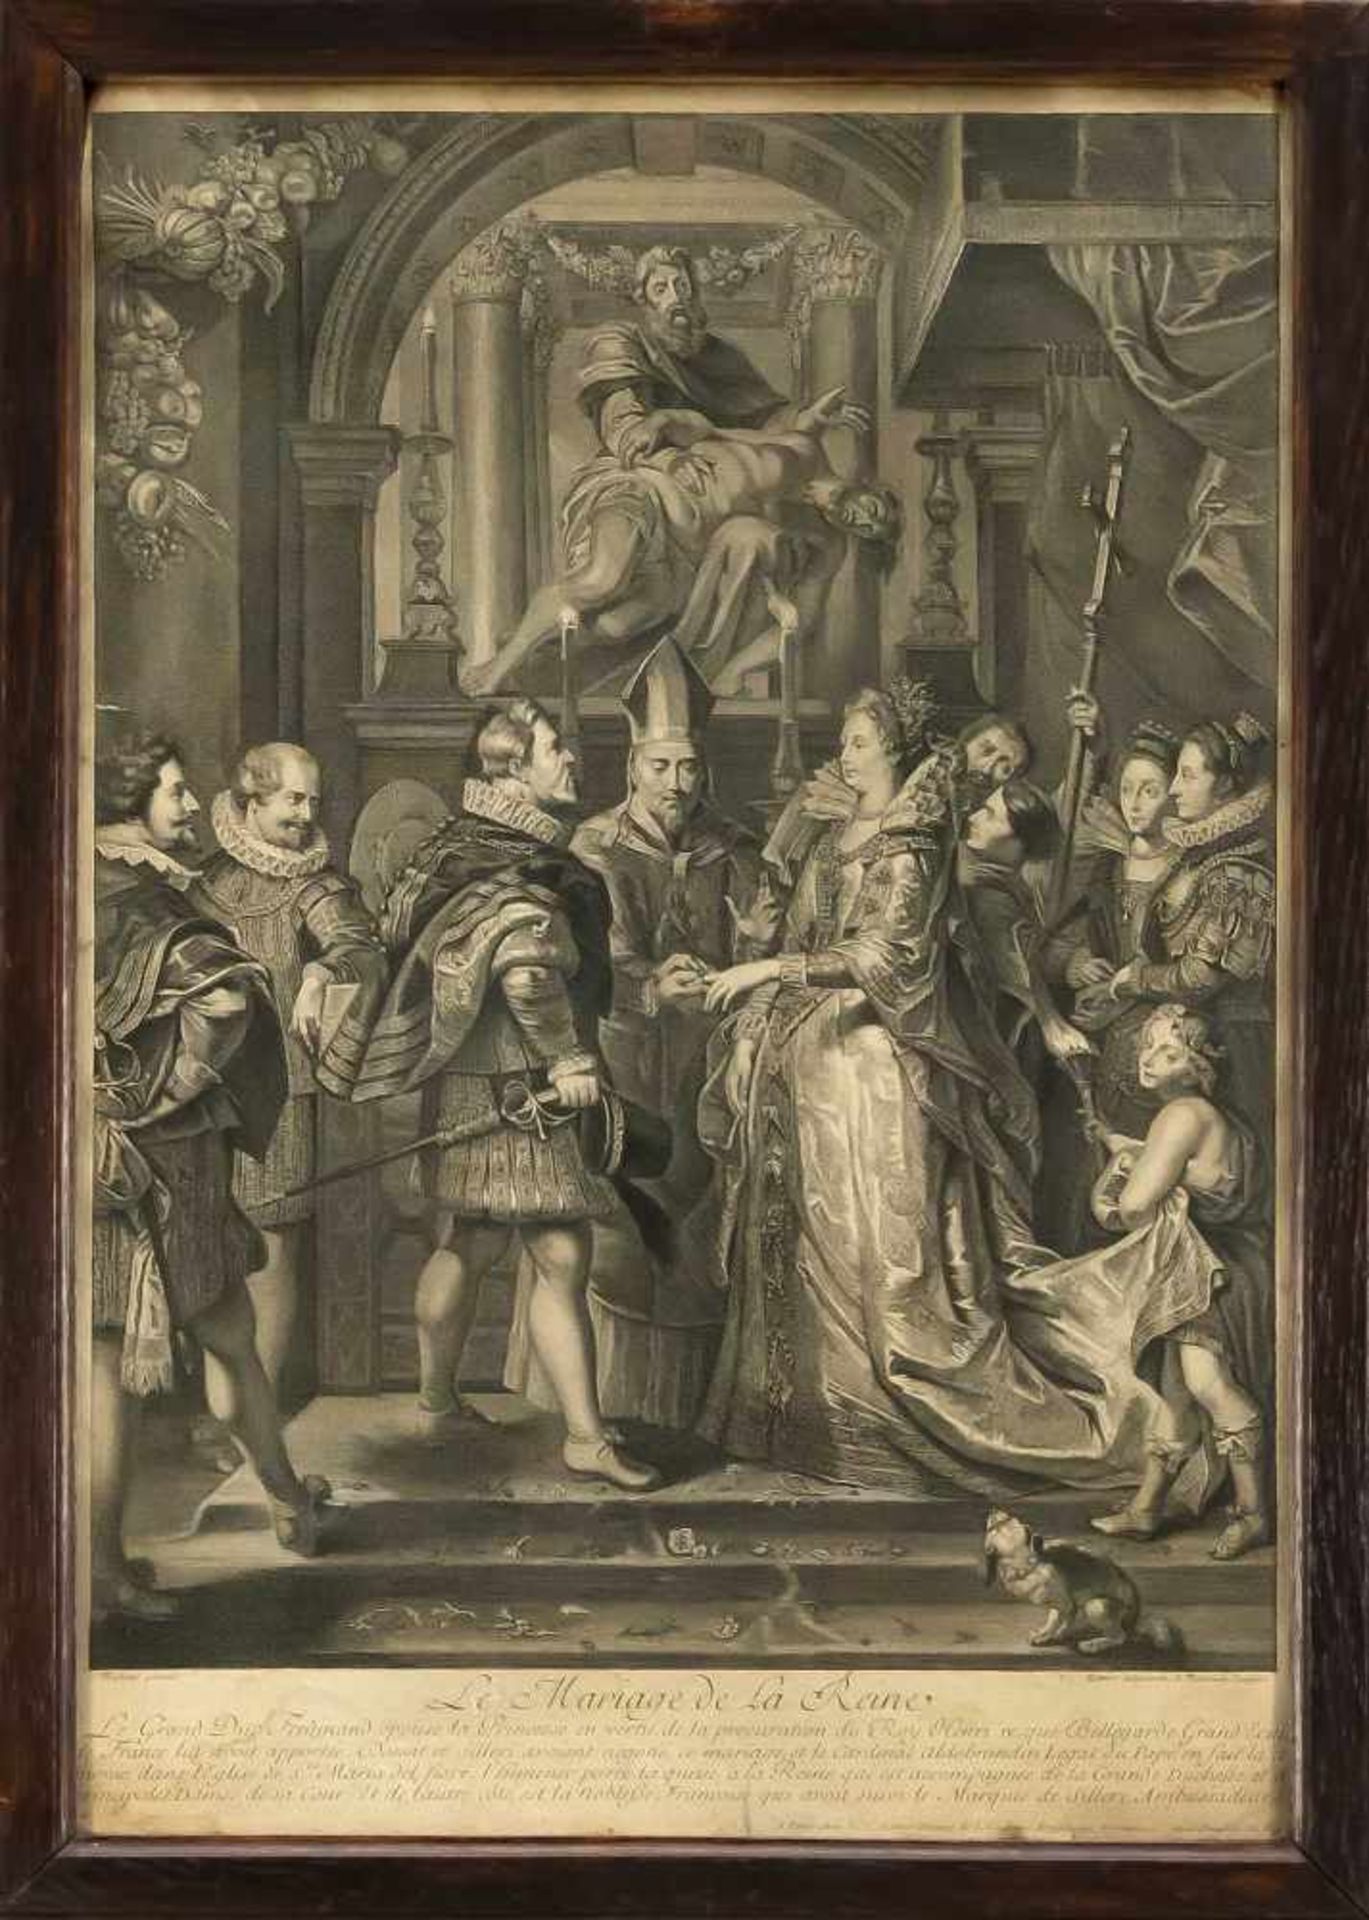 Folge von 5 Kupferstichen nach Rubens aus einen Zyklus zu Maria di Medici, Kupferstichevon Bernard - Image 4 of 5